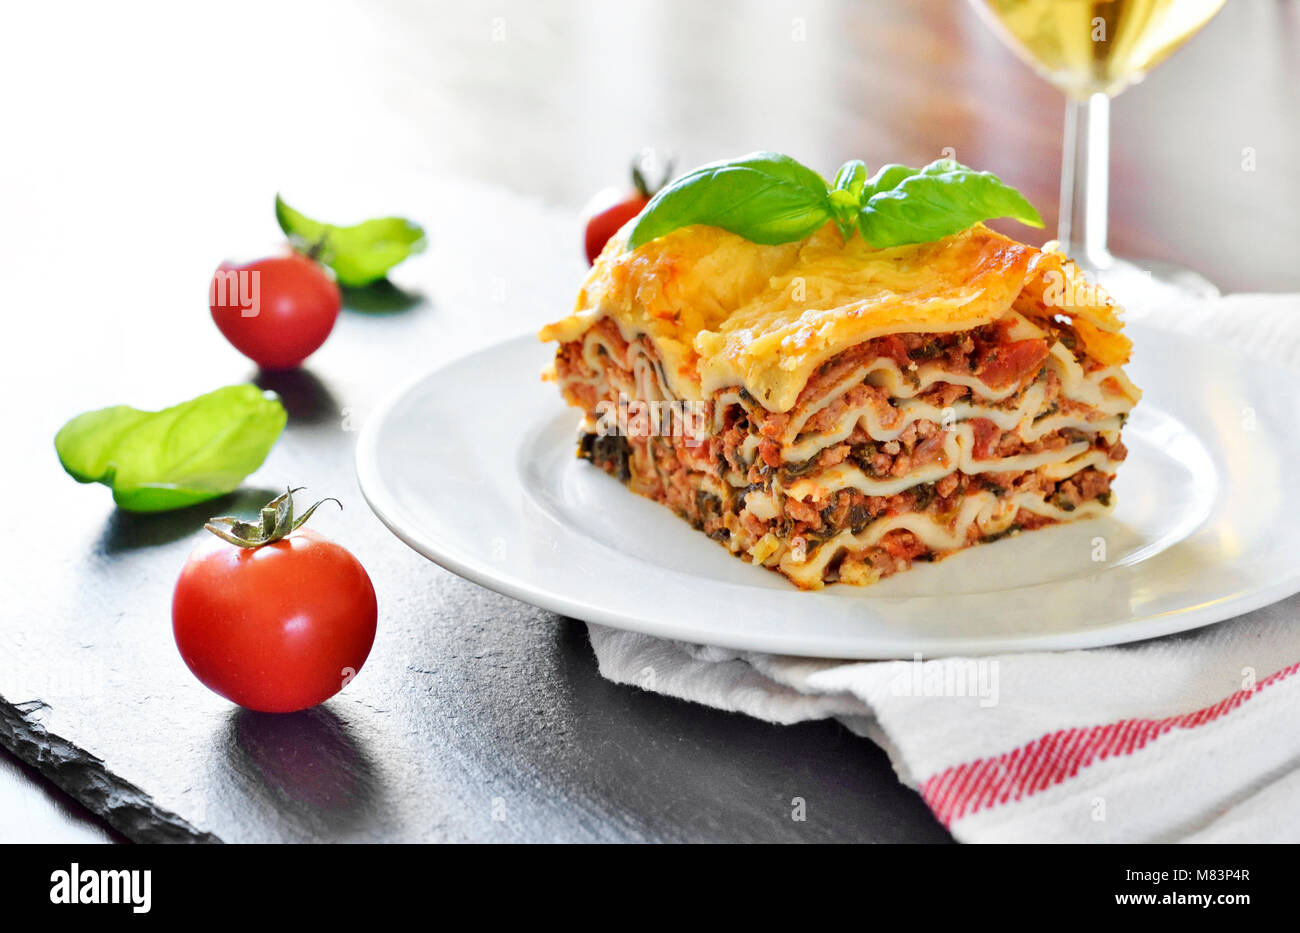 Carni fresche lasagne, lasagne alla bolognese, piatto di pasta su una tavola di legno con una decorazione foglia di basilico. Cucina Italiana. Foto Stock